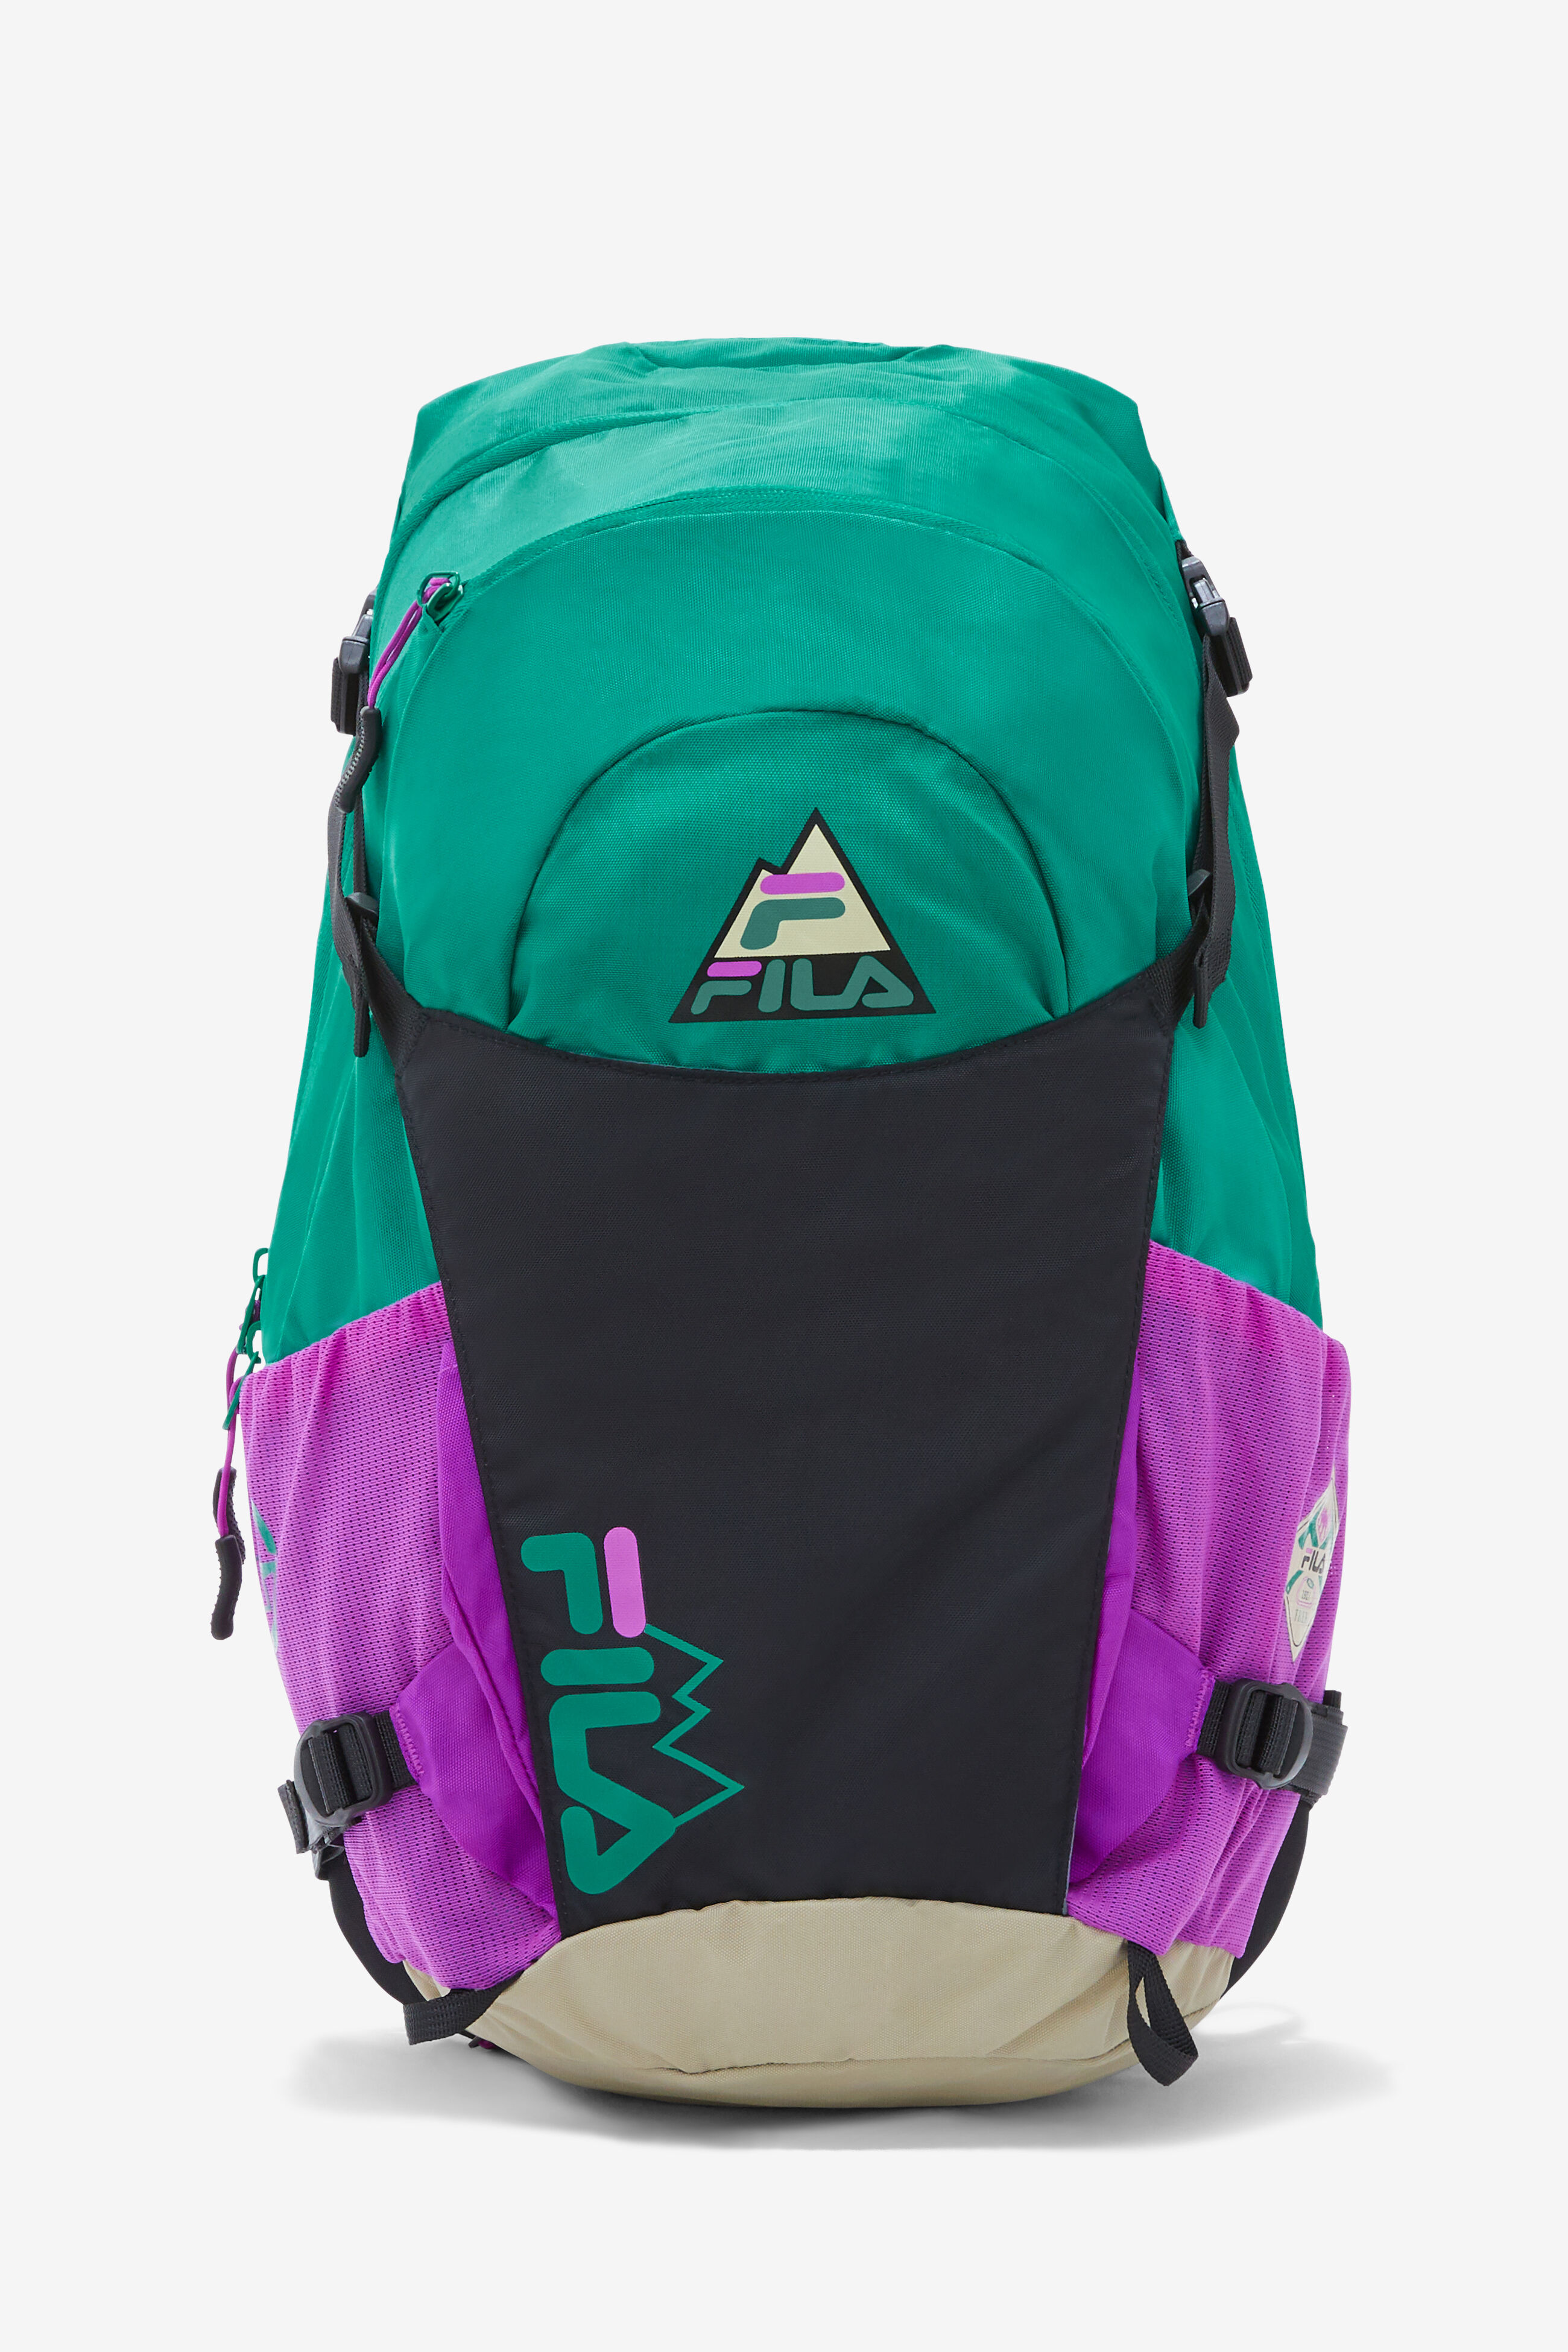 Trail Backpack | Fila 791272834973